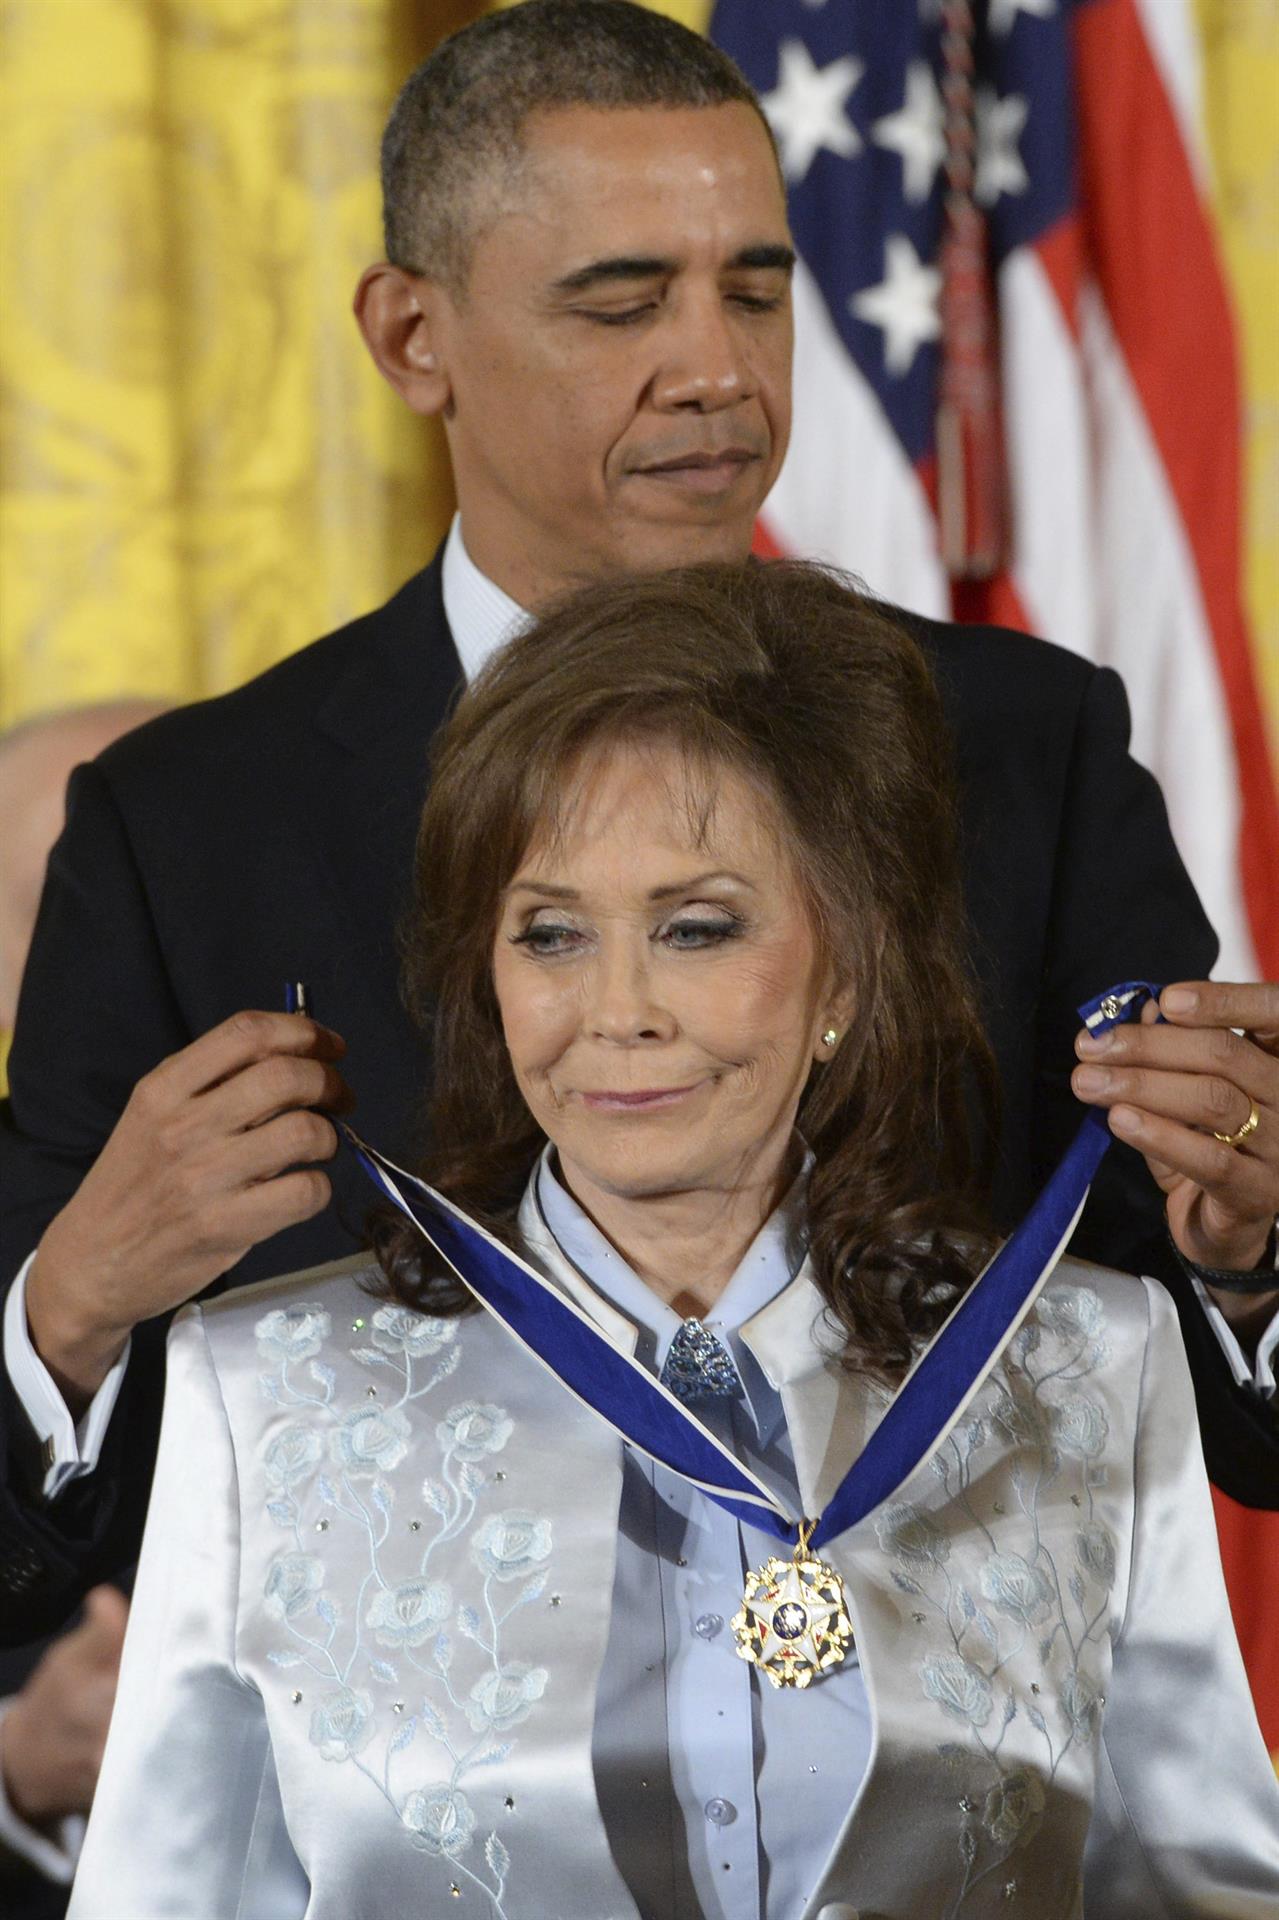 Fotografía de archivo fechada el 20 de noviembre de 2013 que muestra al presidente estadounidense, Barack Obama, mientras impone la Medalla de la Libertad a la cantante Loretta Lynn, en Washington (EE.UU.). EFE/ Michael Reynolds
